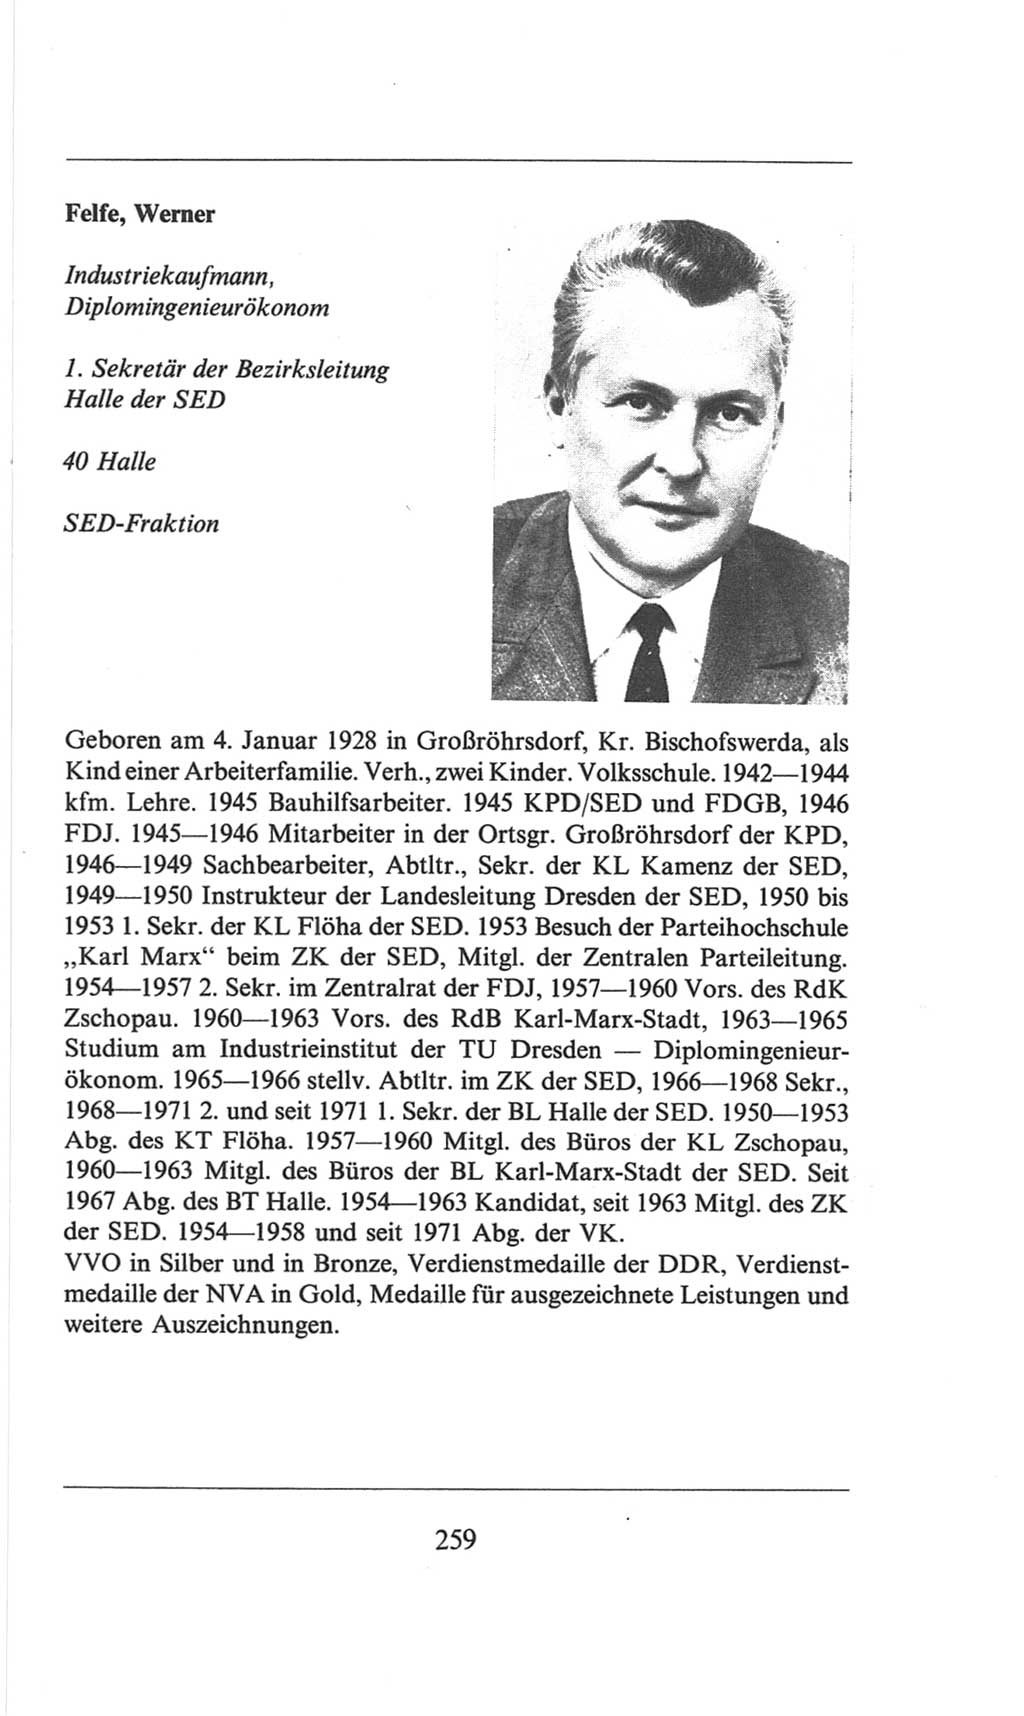 Volkskammer (VK) der Deutschen Demokratischen Republik (DDR), 6. Wahlperiode 1971-1976, Seite 259 (VK. DDR 6. WP. 1971-1976, S. 259)